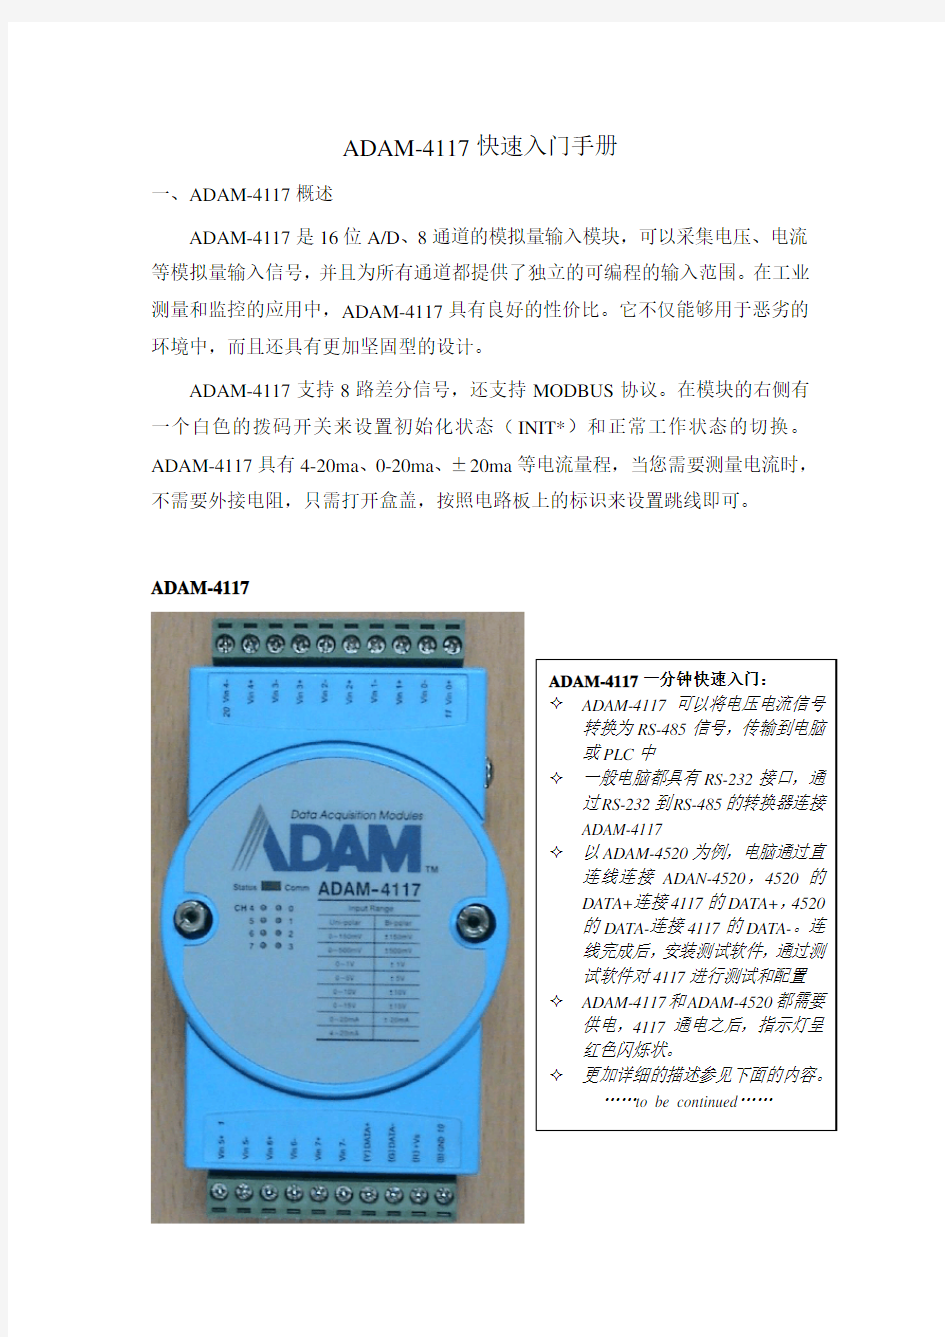 ADAM-4117快速入门手册